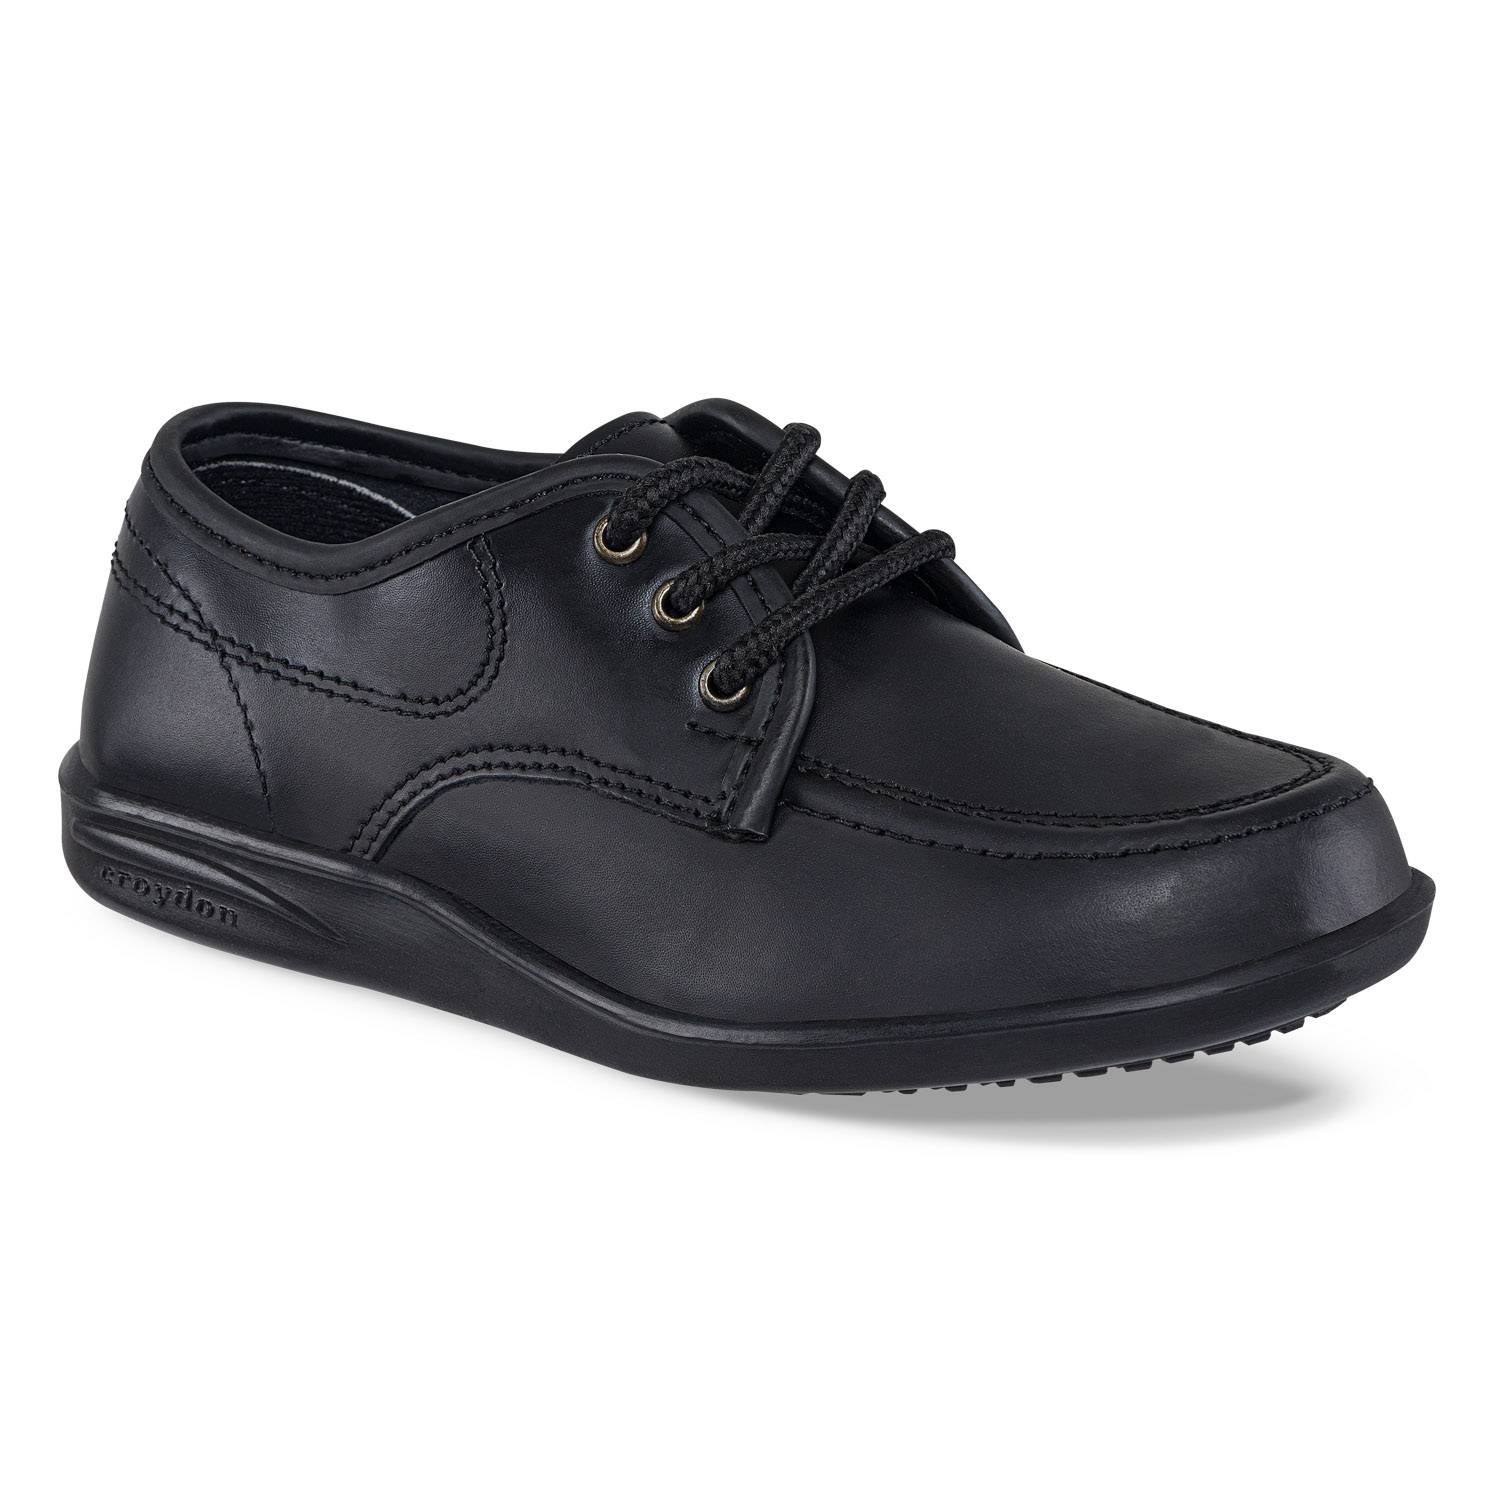 Zapatos Colegiales Bachiller Negro Para Niños Croydon